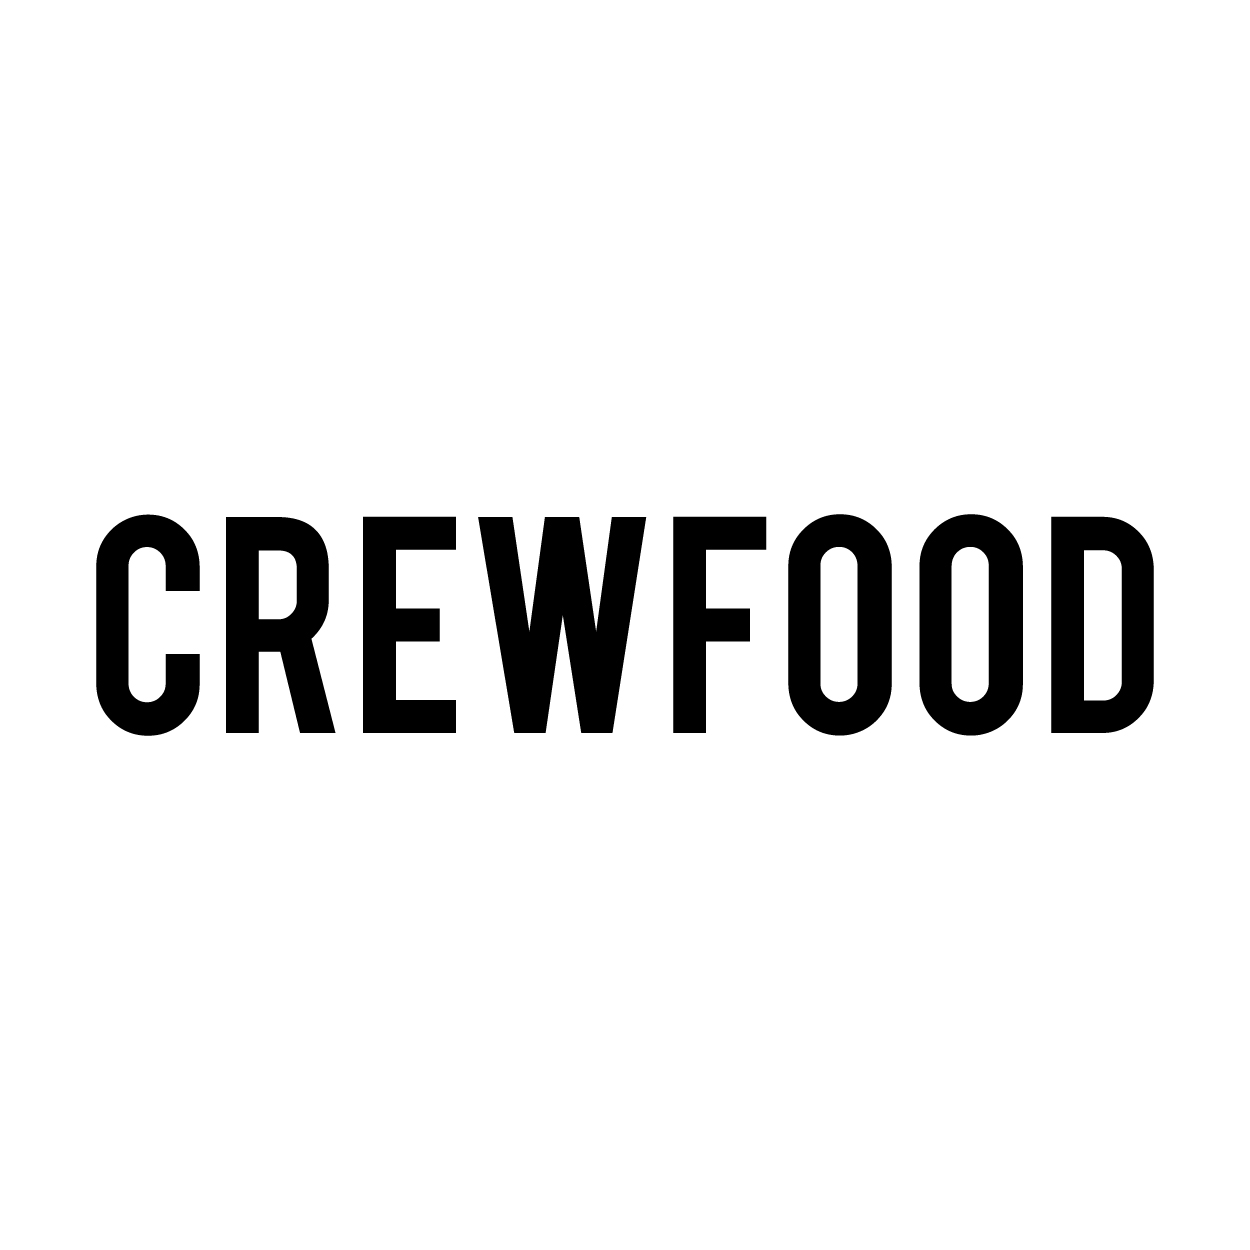 crewfood